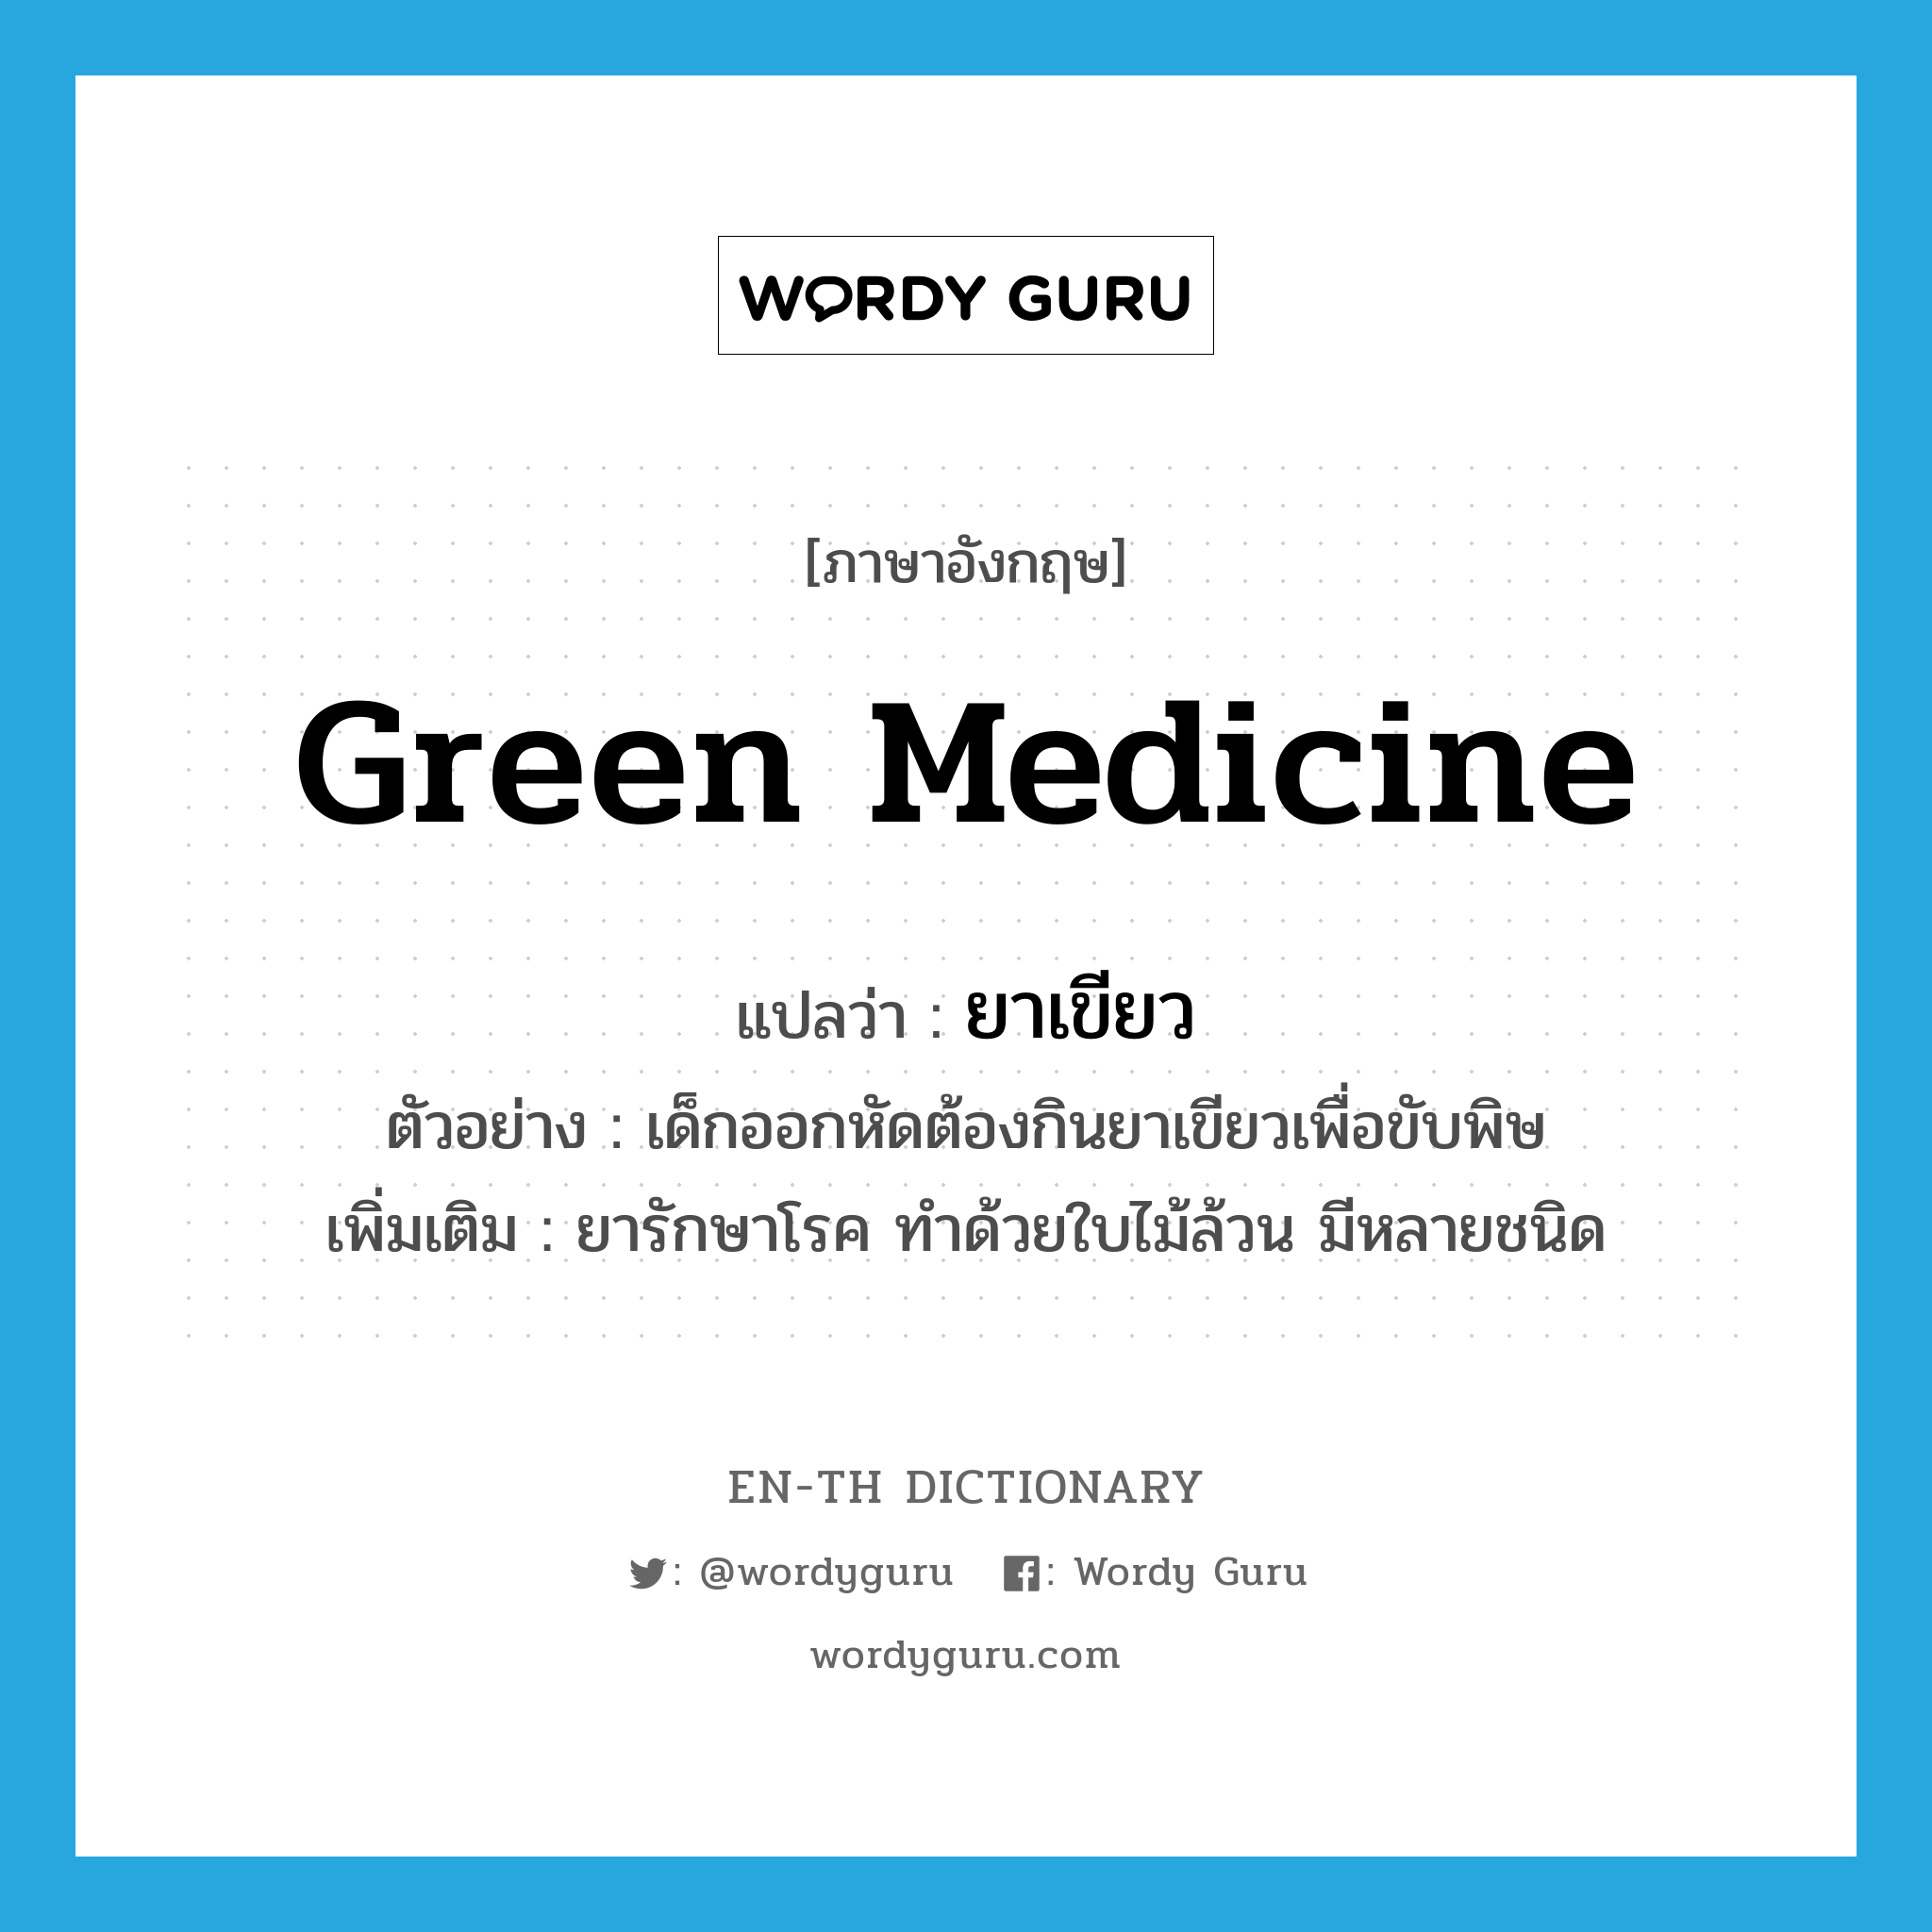 green medicine แปลว่า?, คำศัพท์ภาษาอังกฤษ green medicine แปลว่า ยาเขียว ประเภท N ตัวอย่าง เด็กออกหัดต้องกินยาเขียวเพื่อขับพิษ เพิ่มเติม ยารักษาโรค ทำด้วยใบไม้ล้วน มีหลายชนิด หมวด N